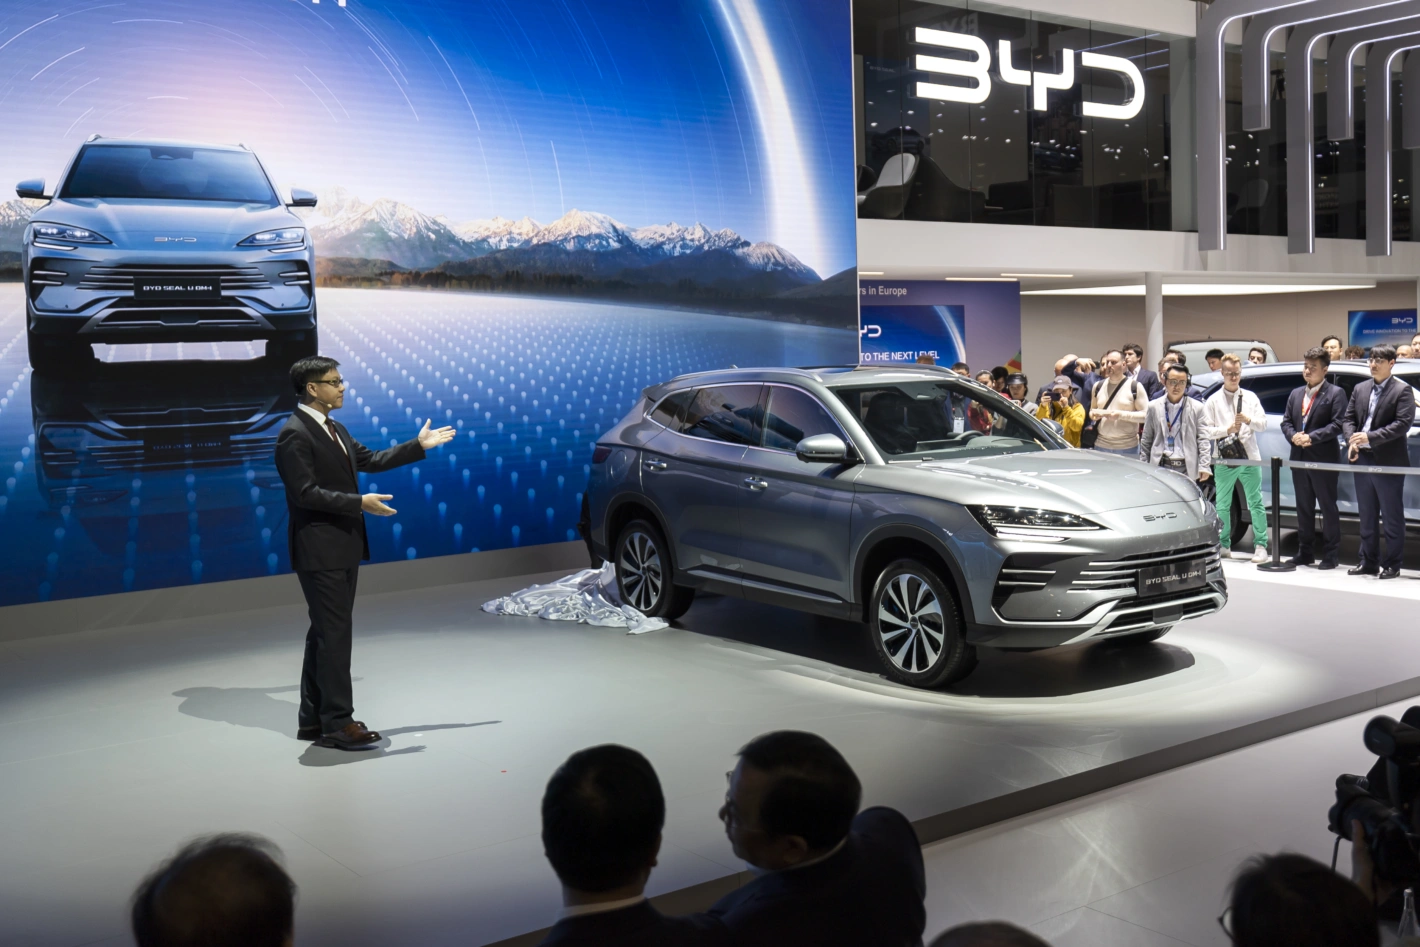 Vom chinesischen Autobauer BYD sind gleich fünf Elektroautos unter den Top Ten der weltweit am meisten verkauften Fahrzeuge. Im Bild die Präsentation eines neuen Modells auf der diesjährigen Motorshow in Genf. Foto: Cyril Zingaro (Keystone)